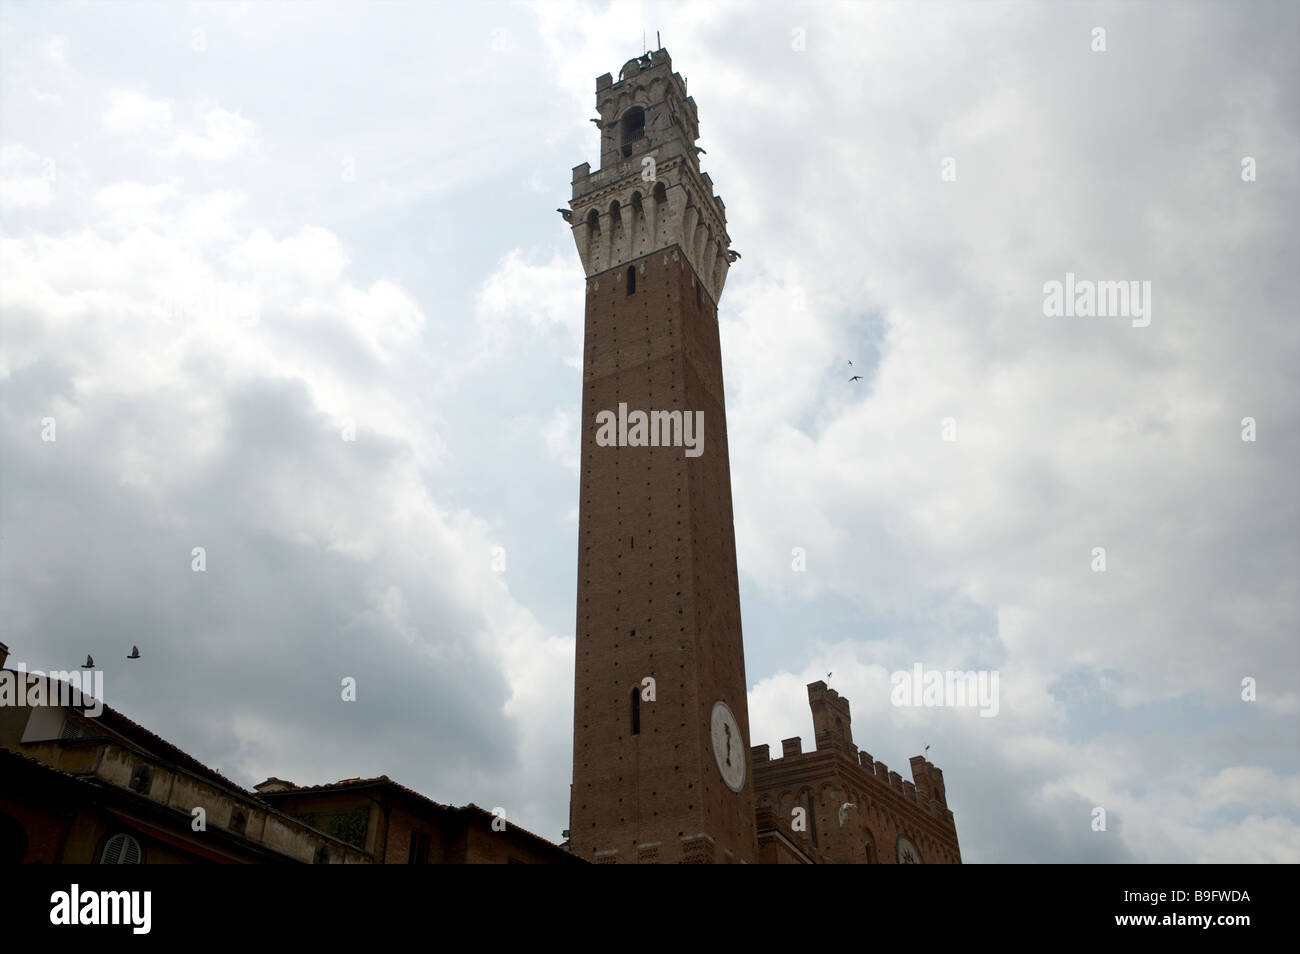 La tour principale de la Torres de Mangia dans la place appelée Piazza Il Campo sous un ciel gris à Sienne Italie Banque D'Images